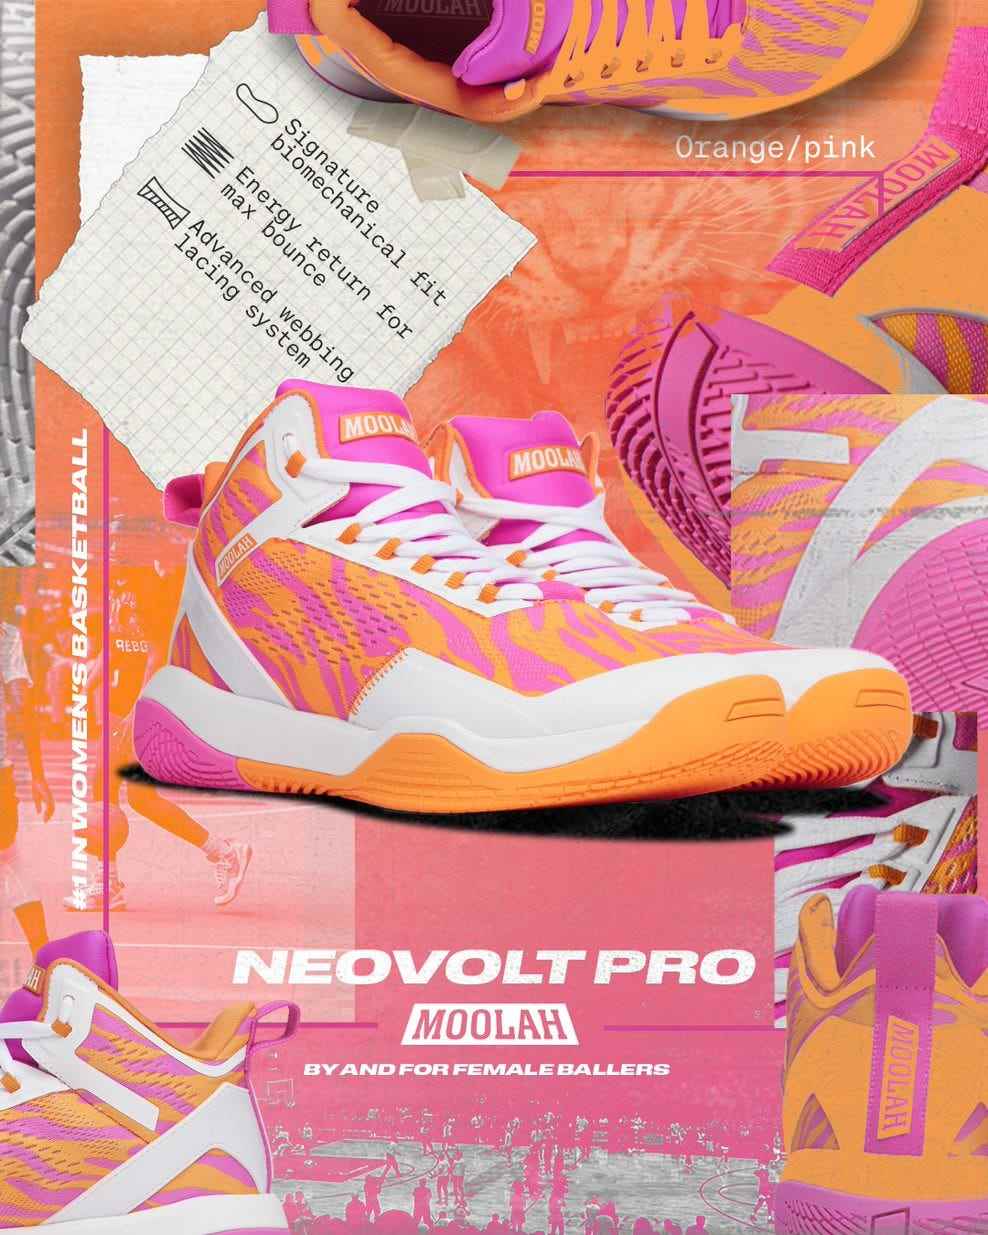 Die neueste Veröffentlichung von Moolah Kicks: der Neovolt Pro.